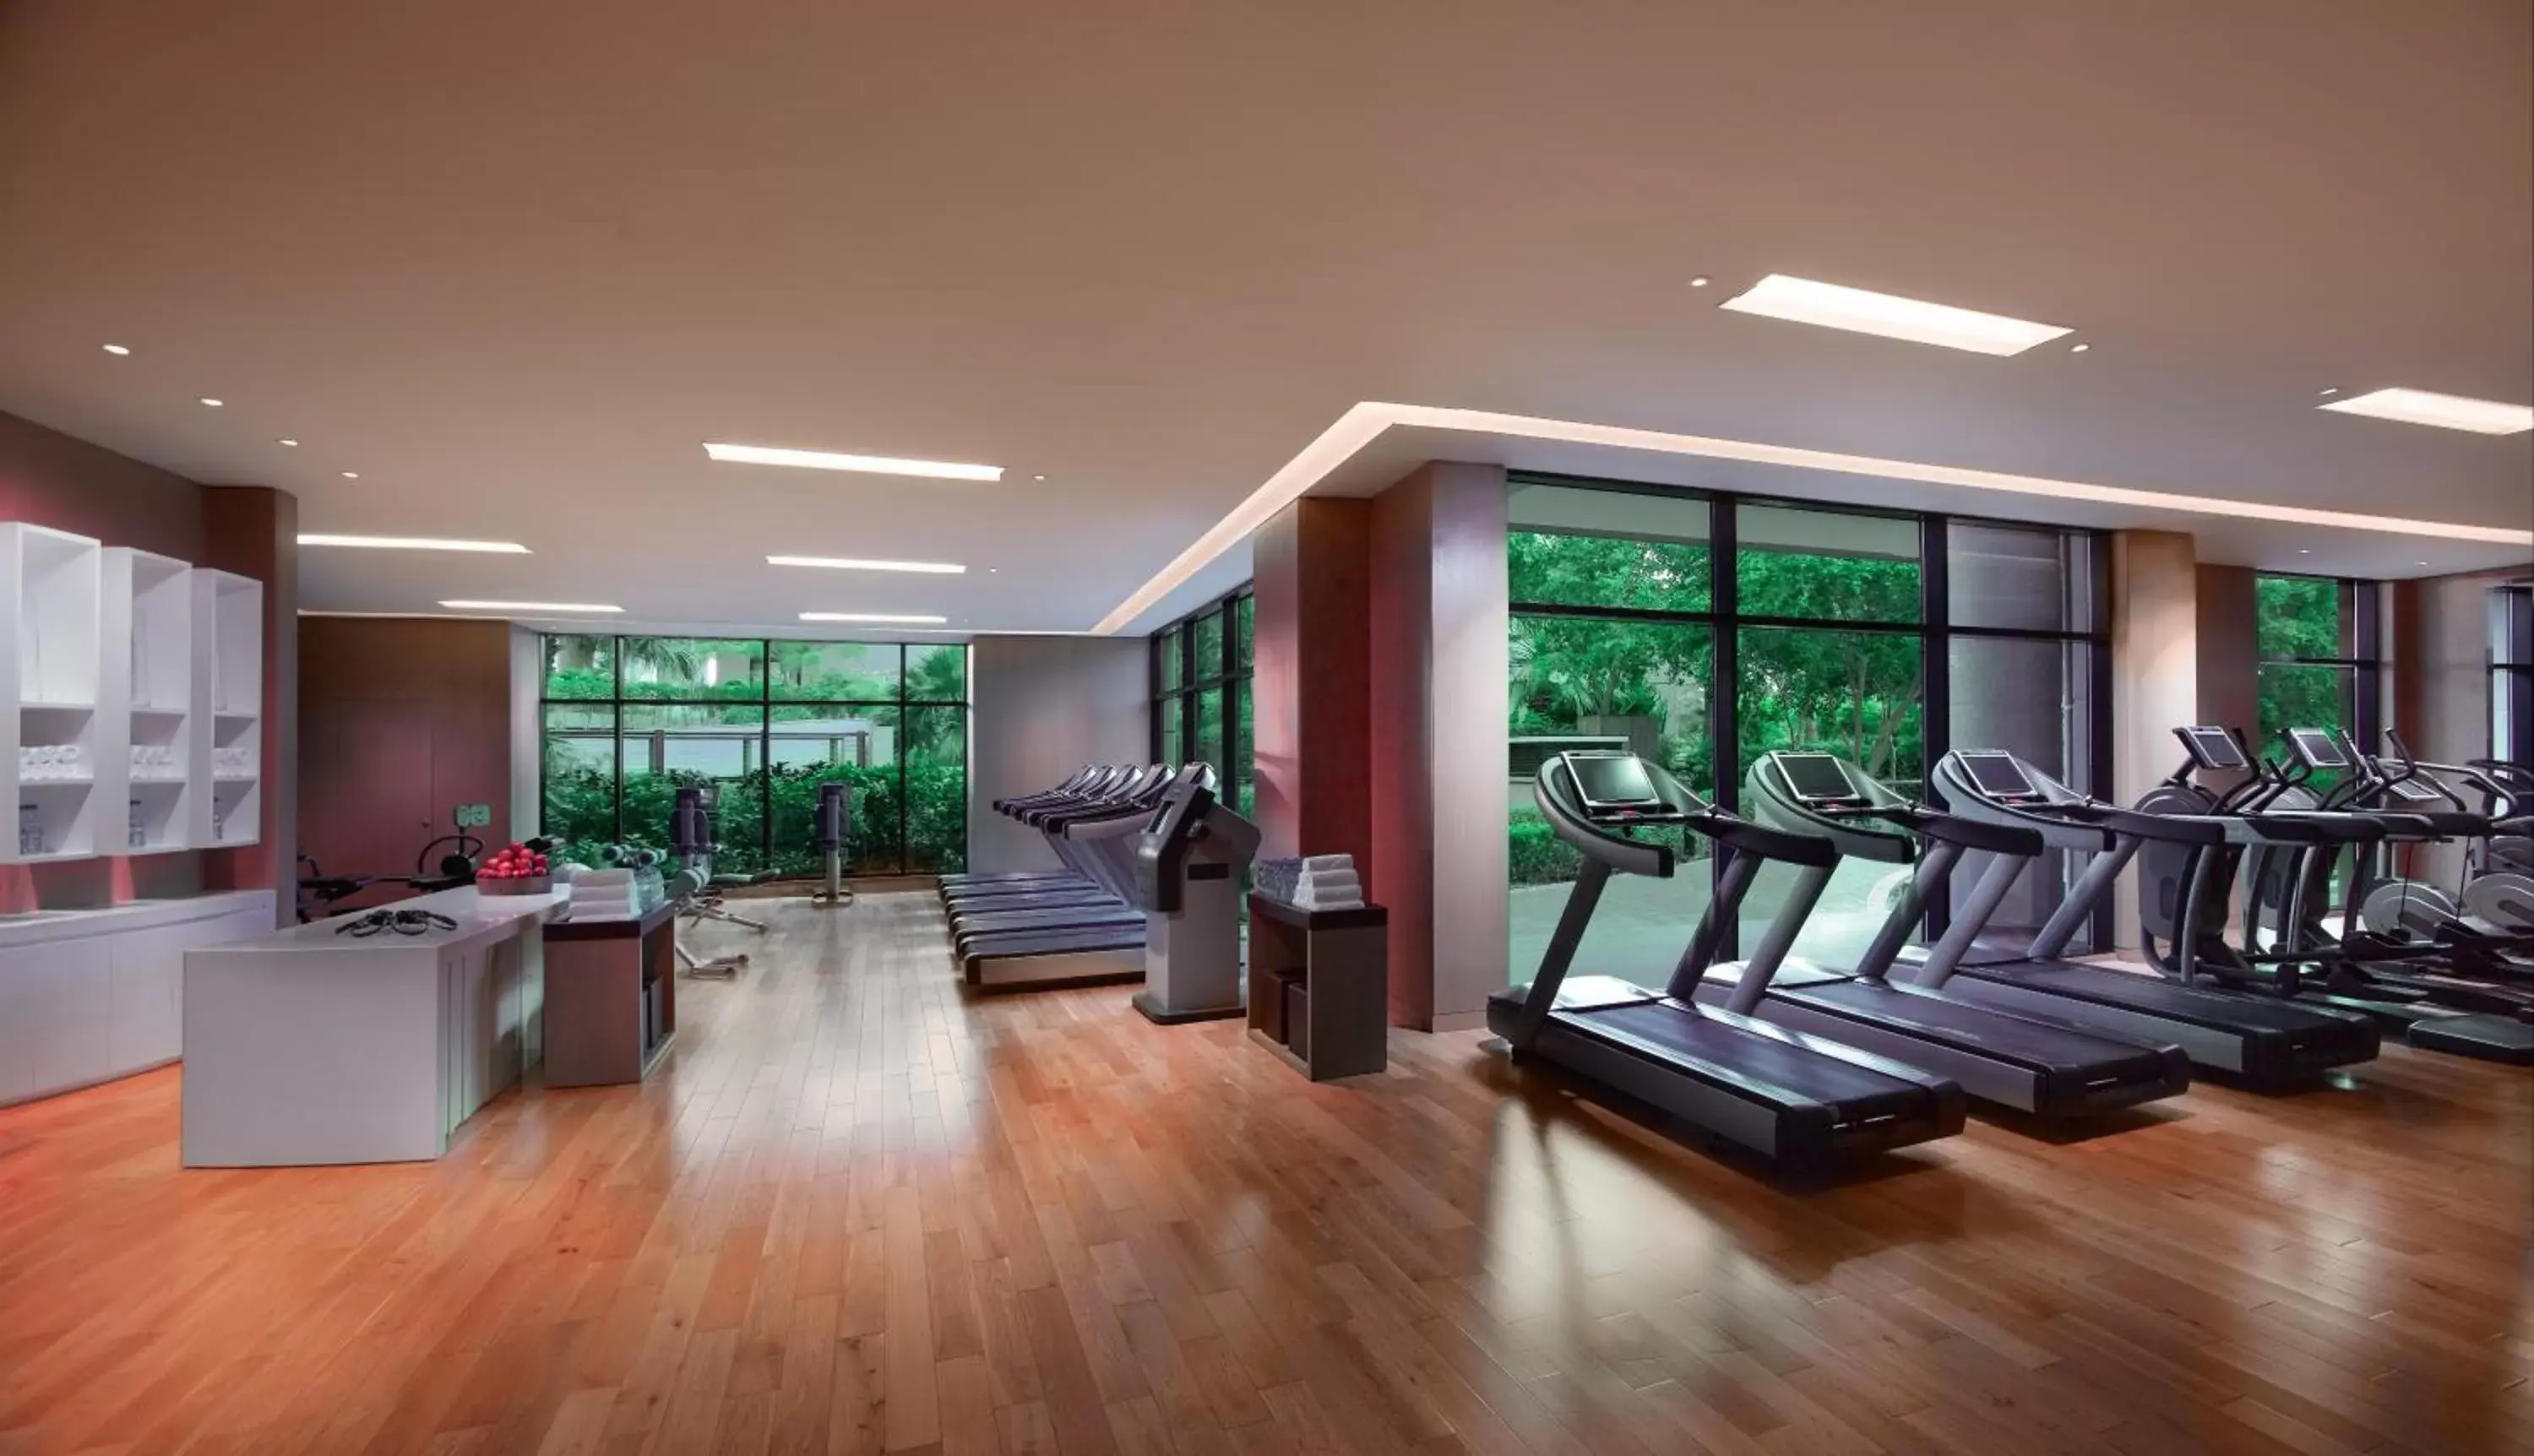 Fitness centre/facilities, Fitness Center/Facilities in Grand Hyatt Residence